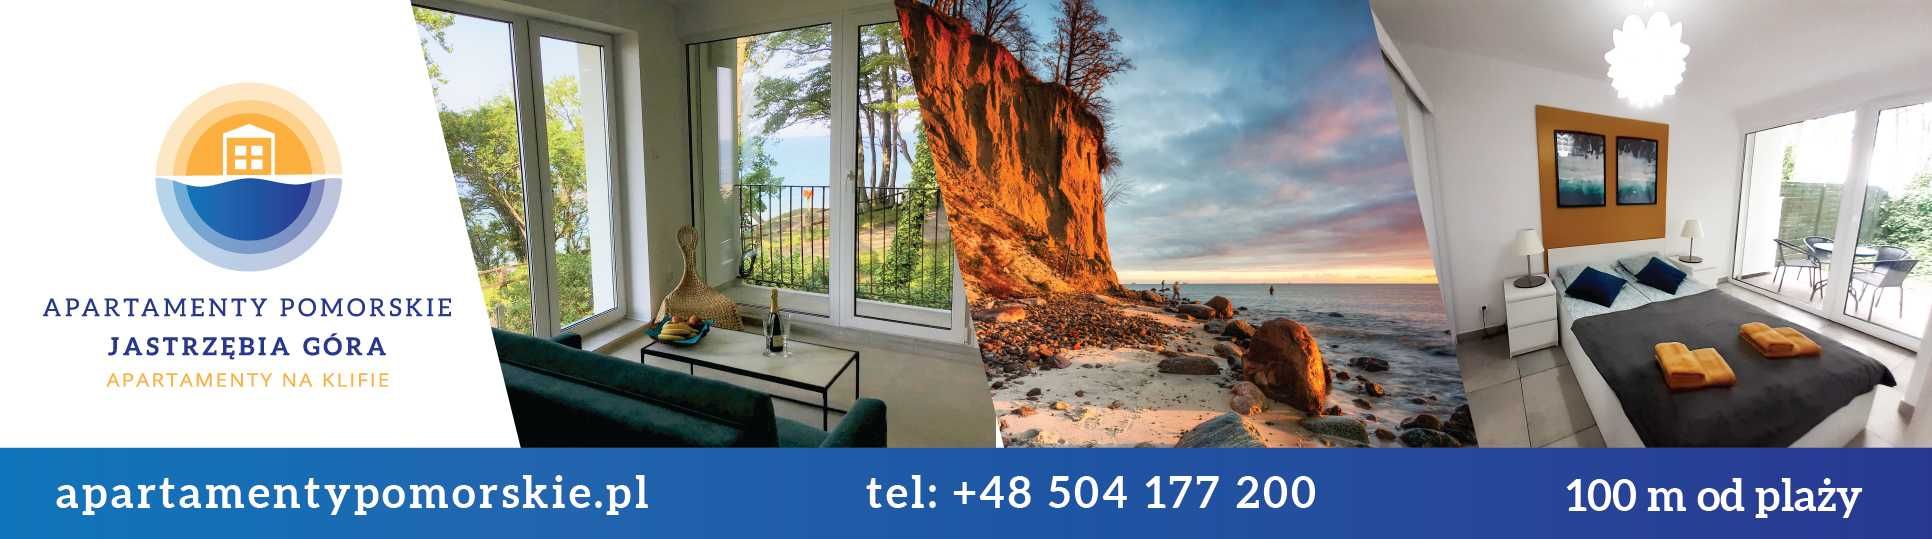 2-pokojowy apartament z wyjątkowym widokiem na morze, 100m od plaży